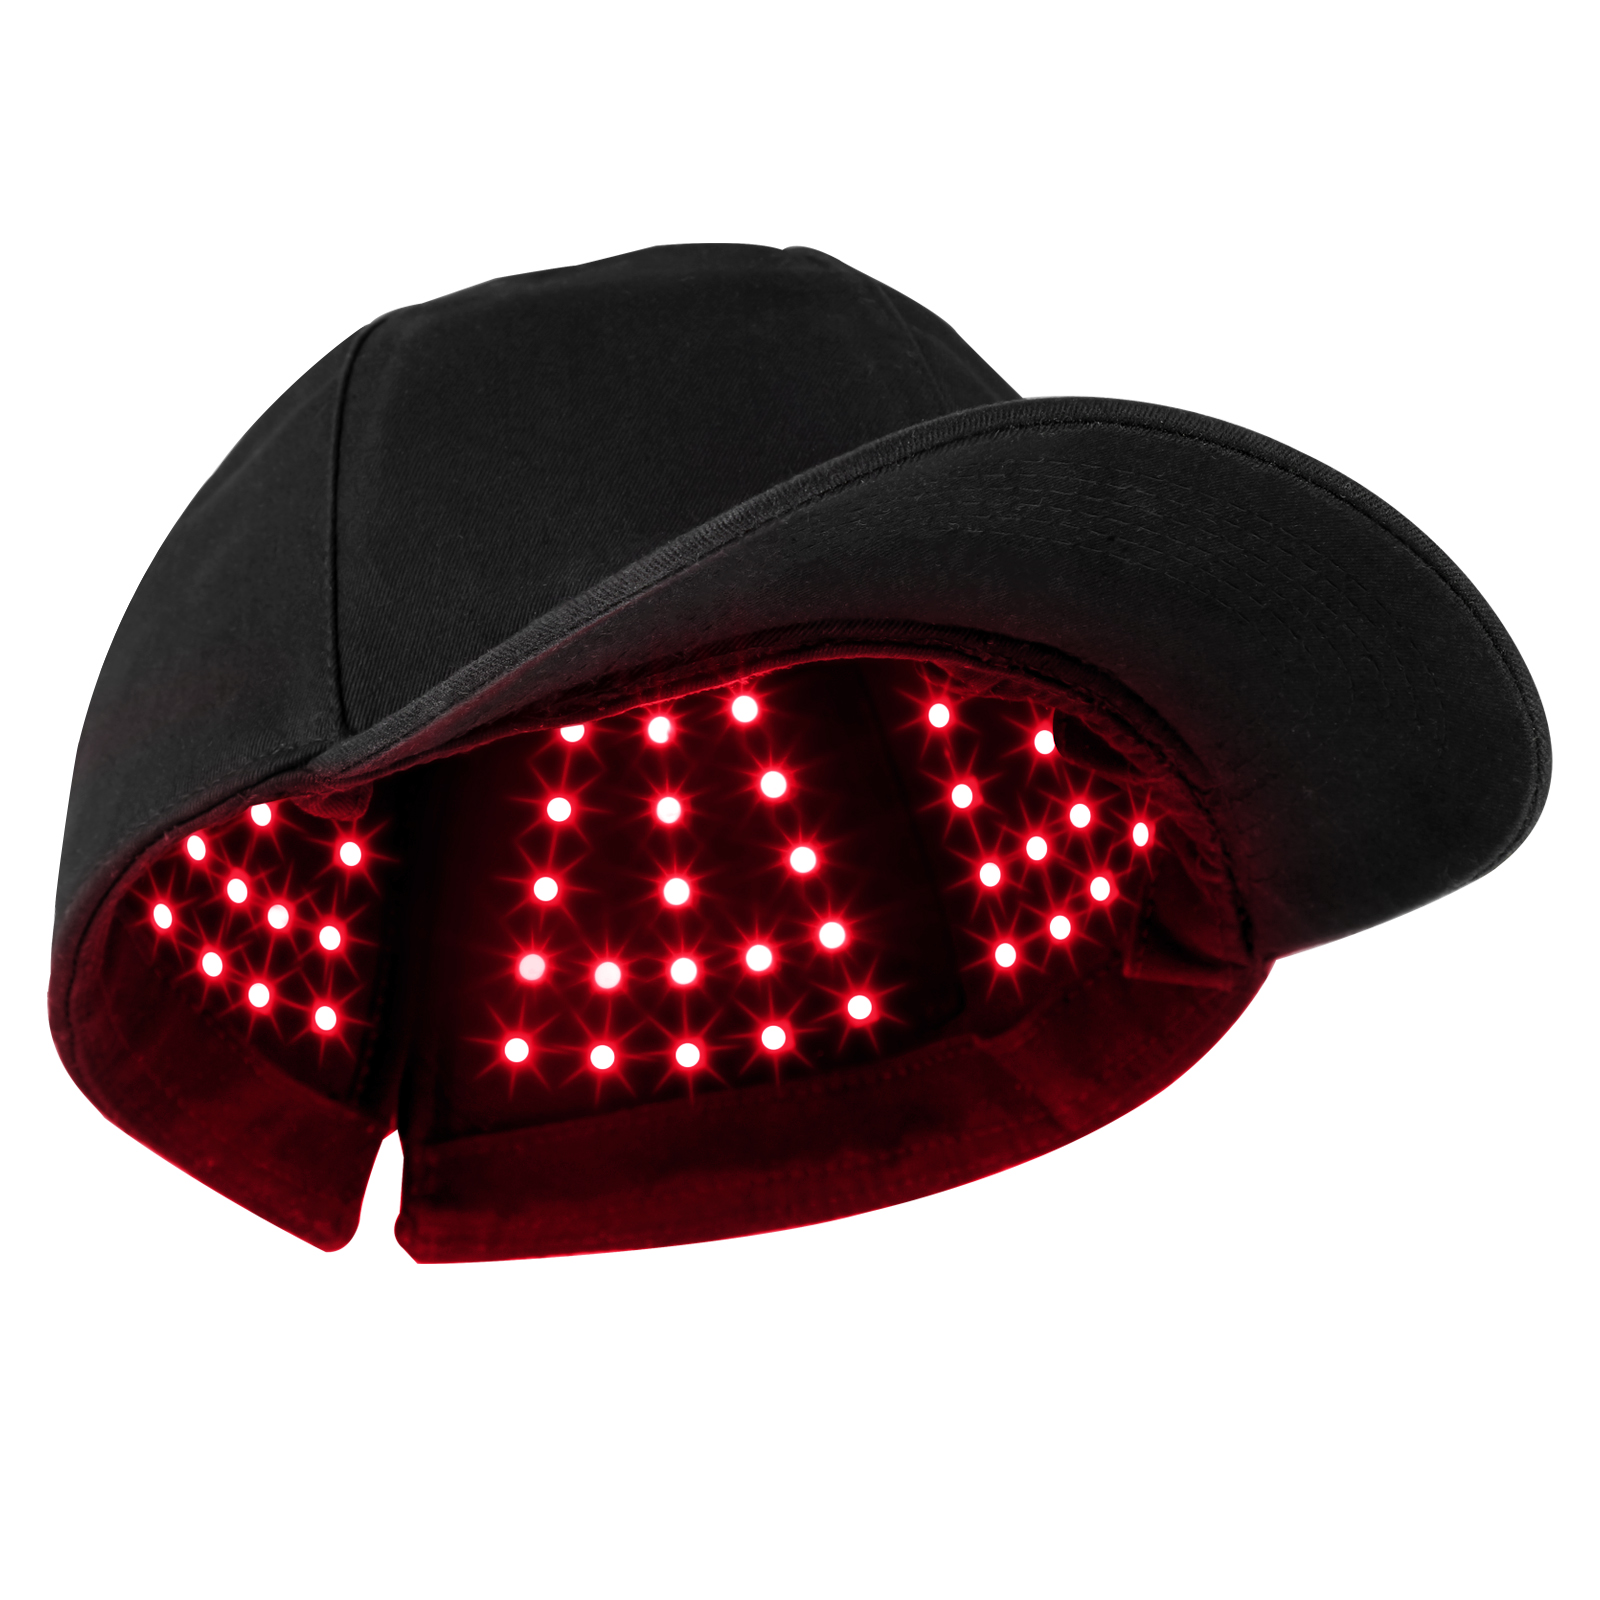 머리 재 성장, 두통 통증 완화 및 알츠하이머 치료 공장에 이상적인 최고 품질의 붉은 빛 치료 모자